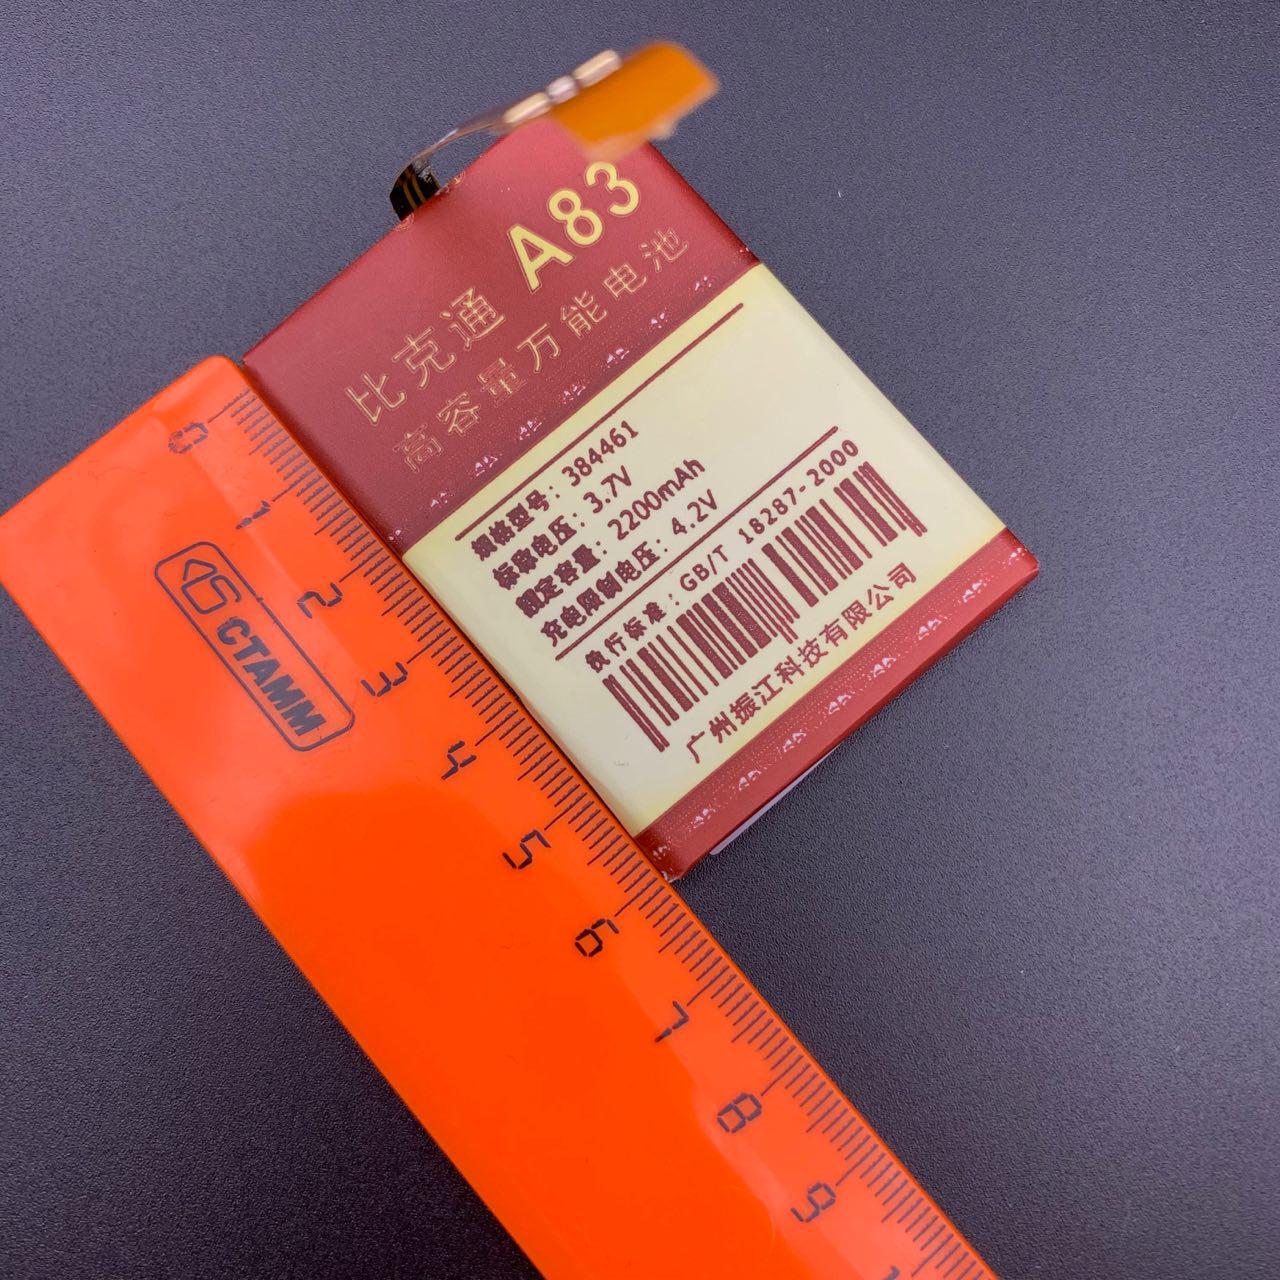 АКБ (Аккумулятор) универсальный A83 с контактами на шлейфе 2200 mAh 4.2V (61x44x38мм, 61x44x3.8мм).